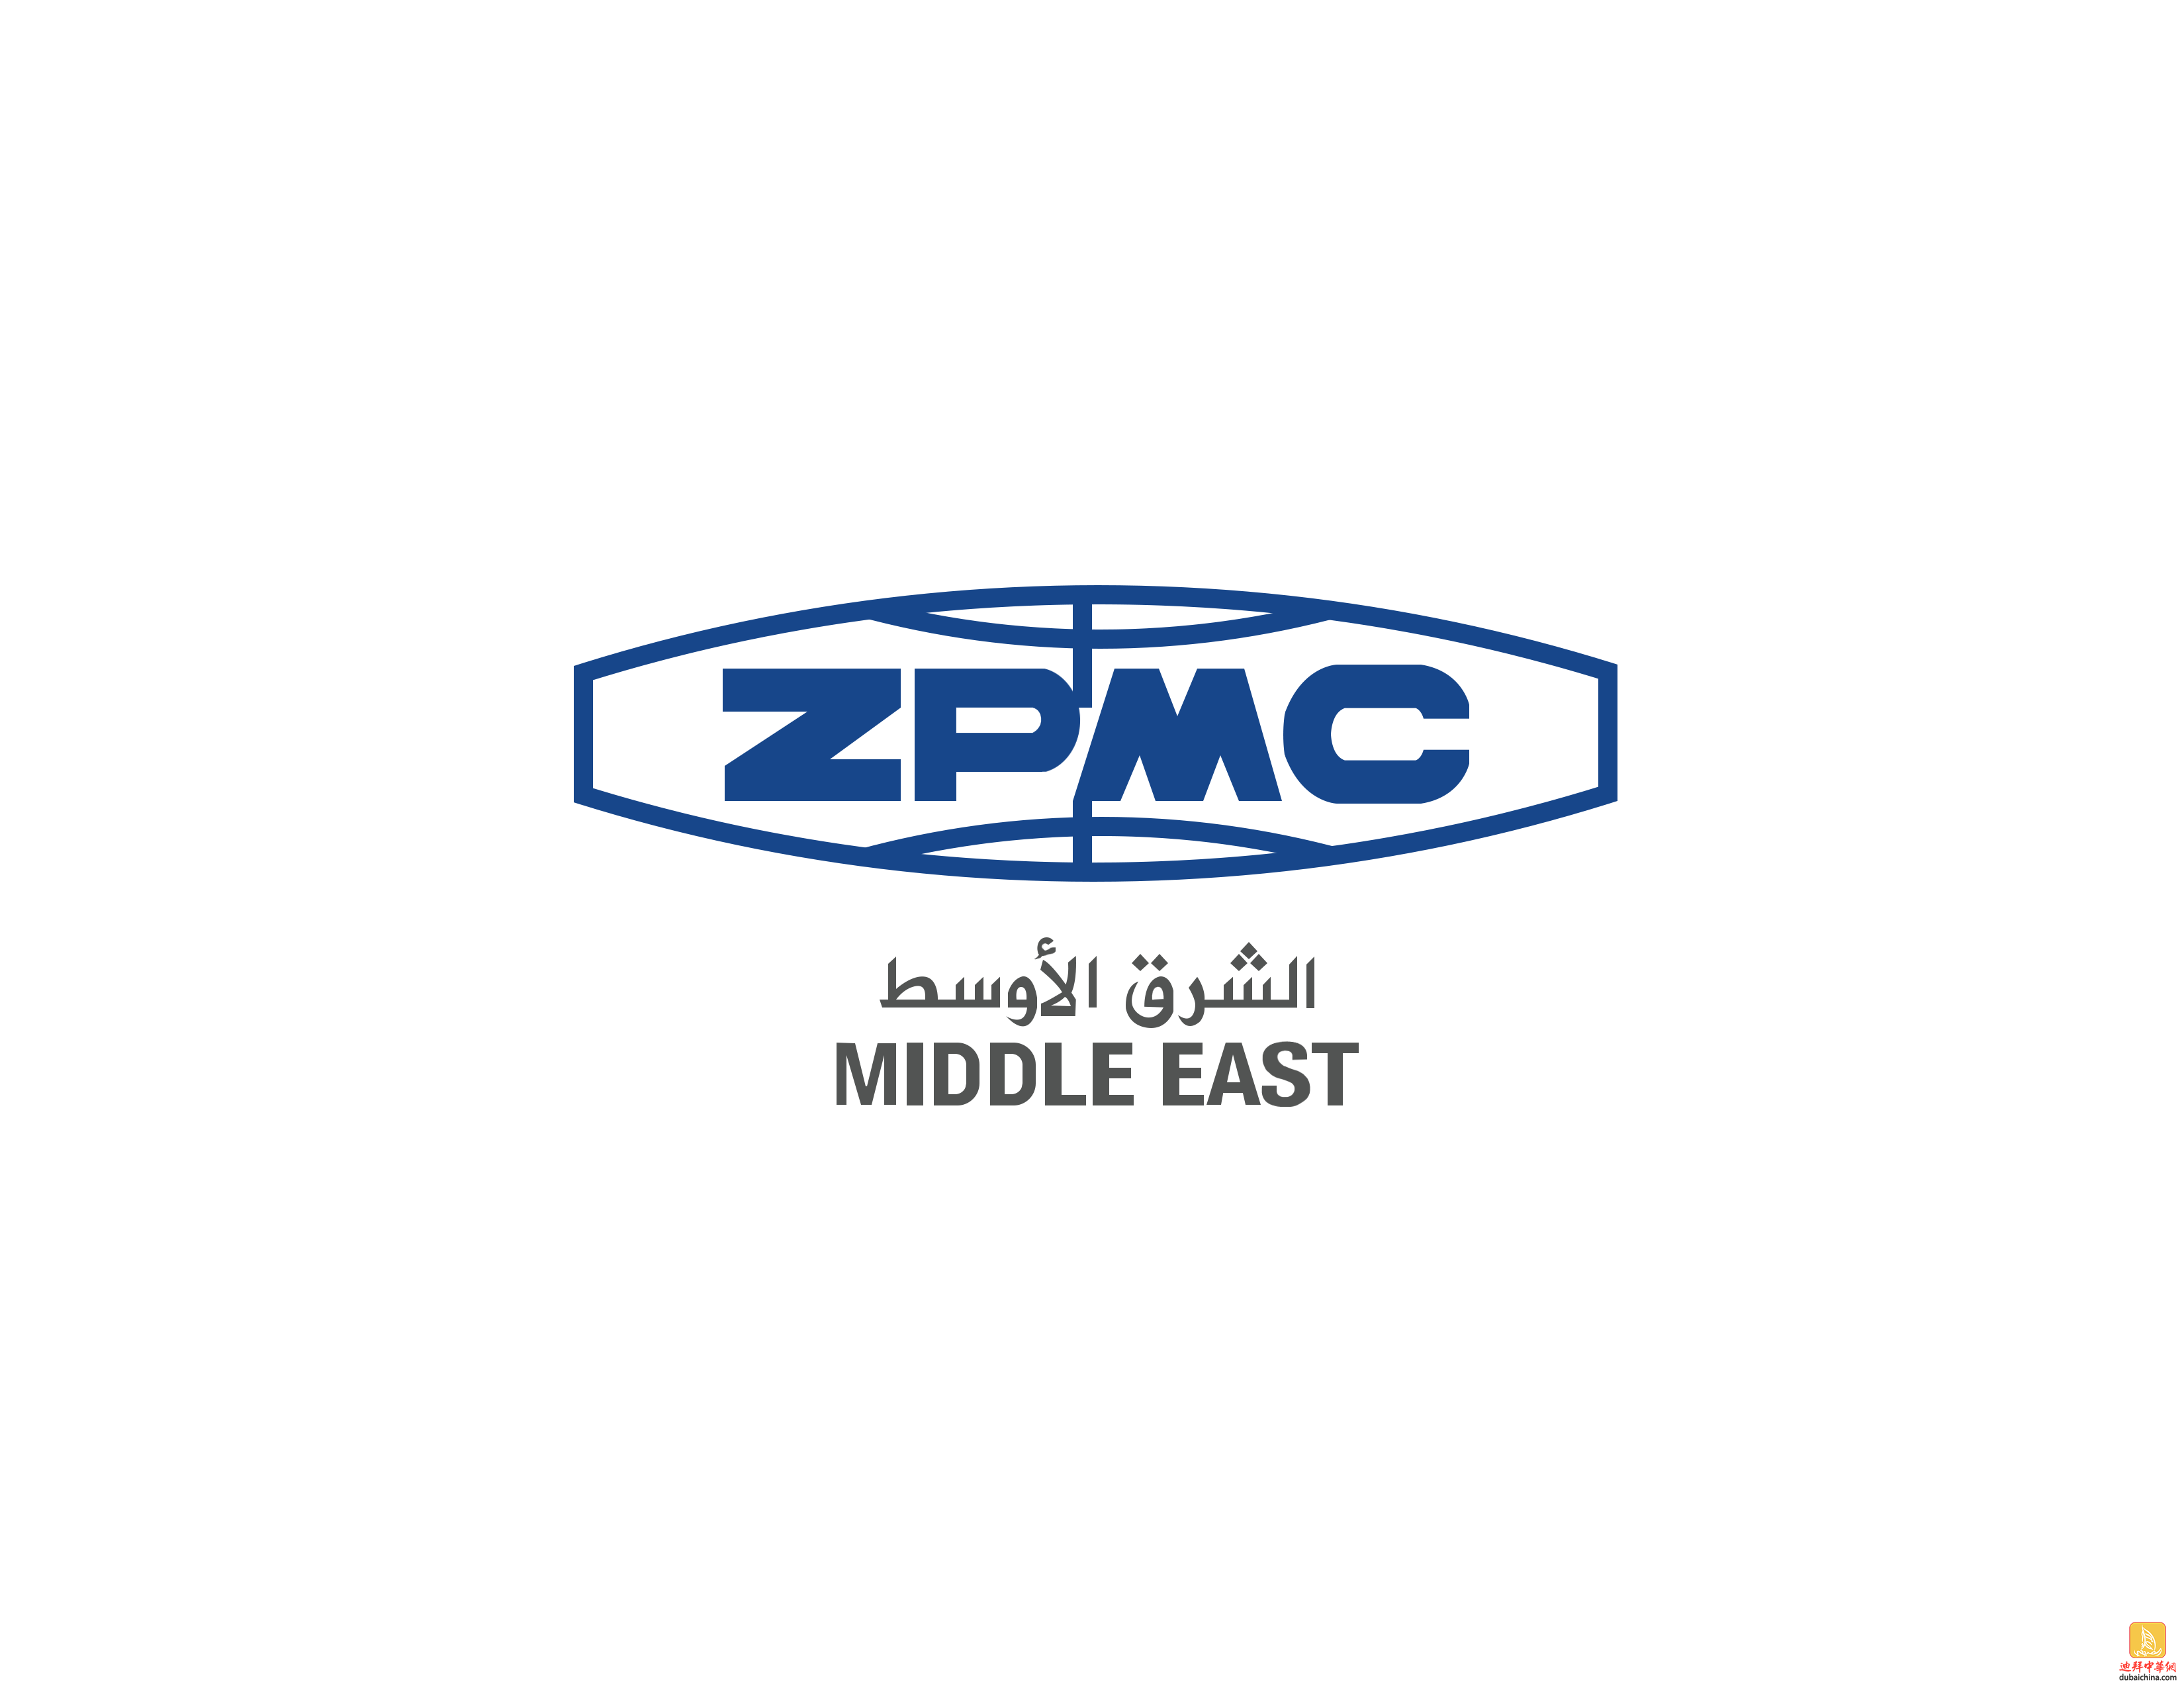 招聘, 行政专员, 薪酬面议, ZPMC Middle East